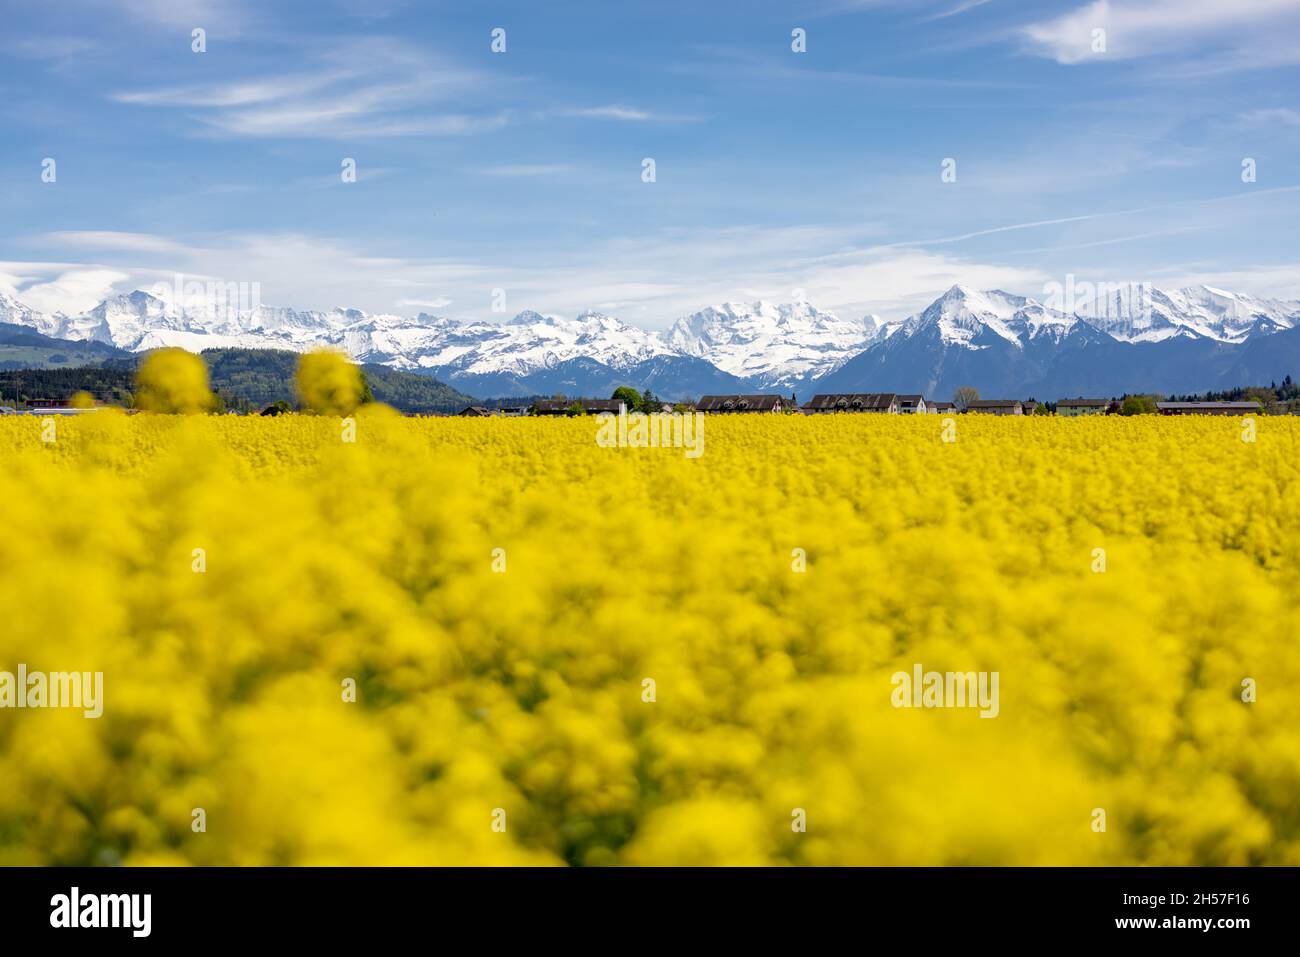 Ein Rapsblumenfeld auf dem Hintergrund der verschneiten Berge Stockfoto